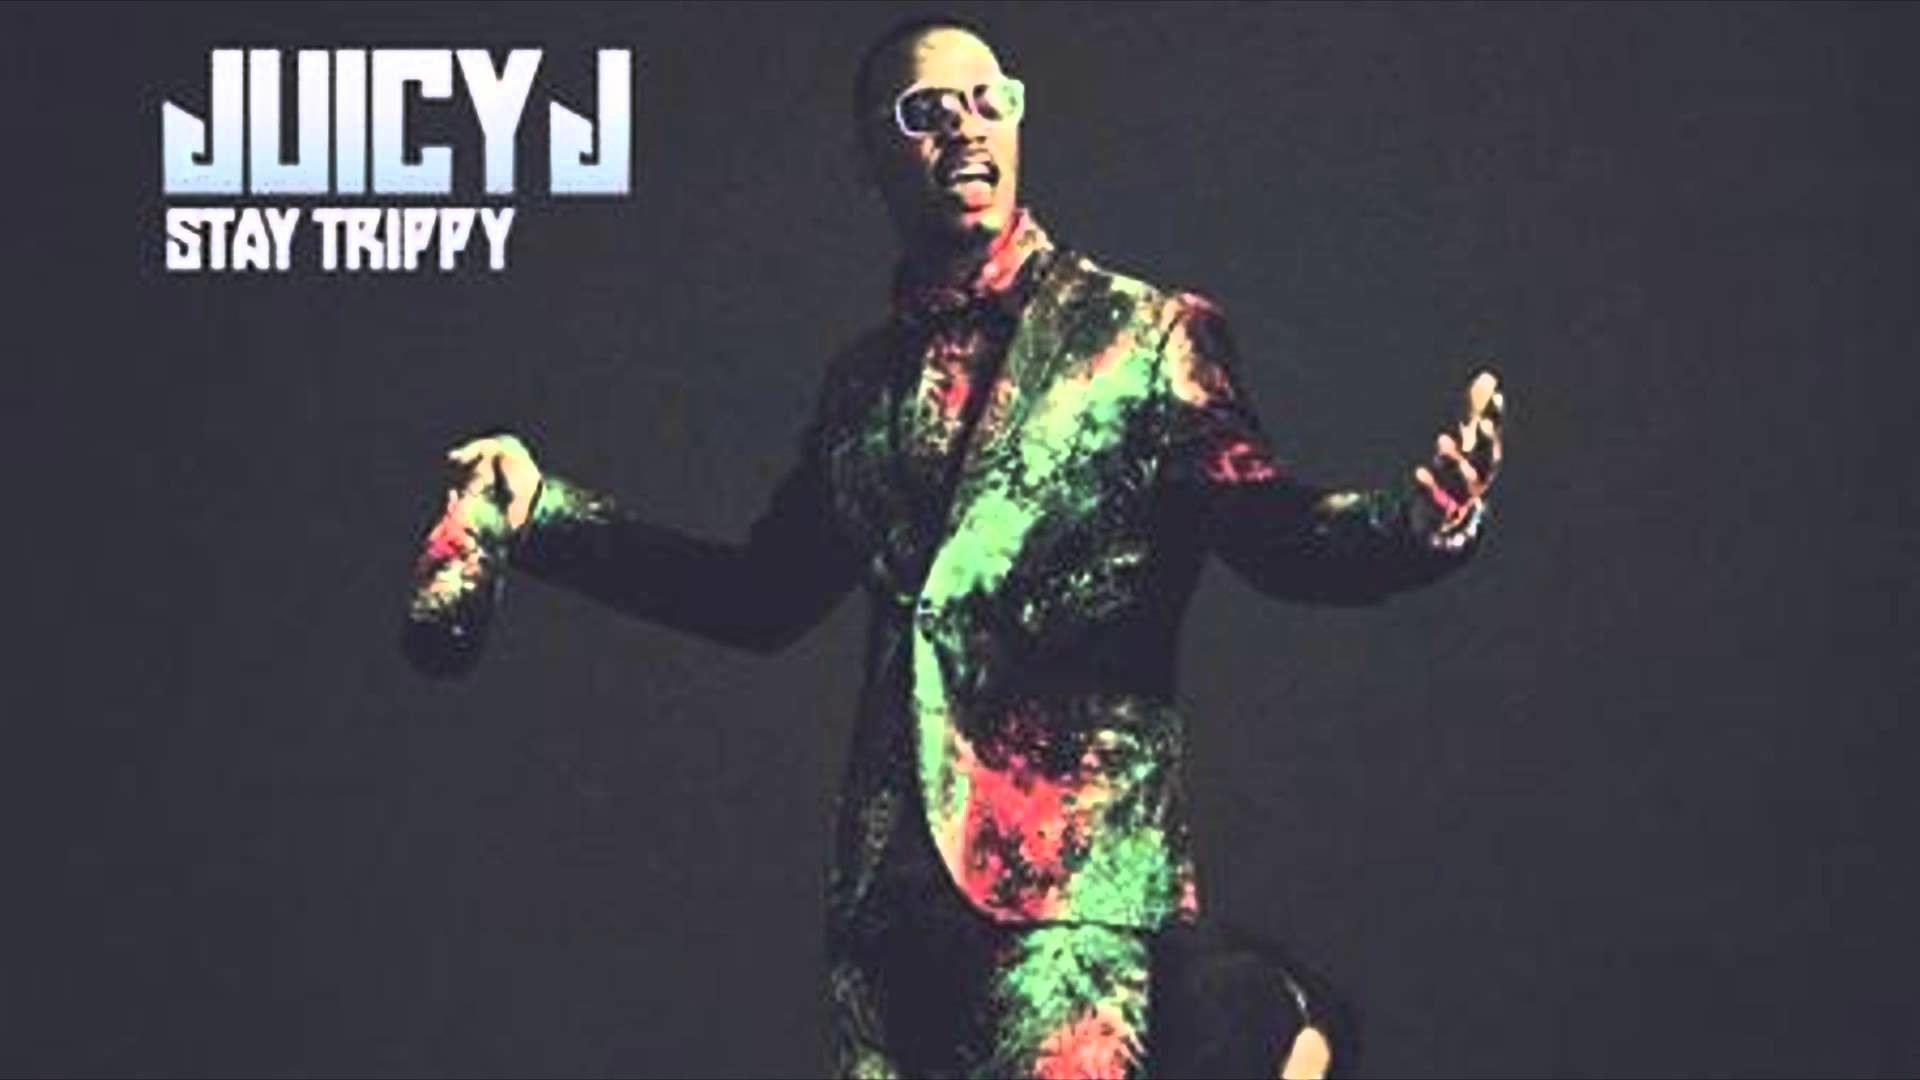 1920x1080 Trippy Switch | Juicy J Stay Trippy Hip Hop Music - YouTube .